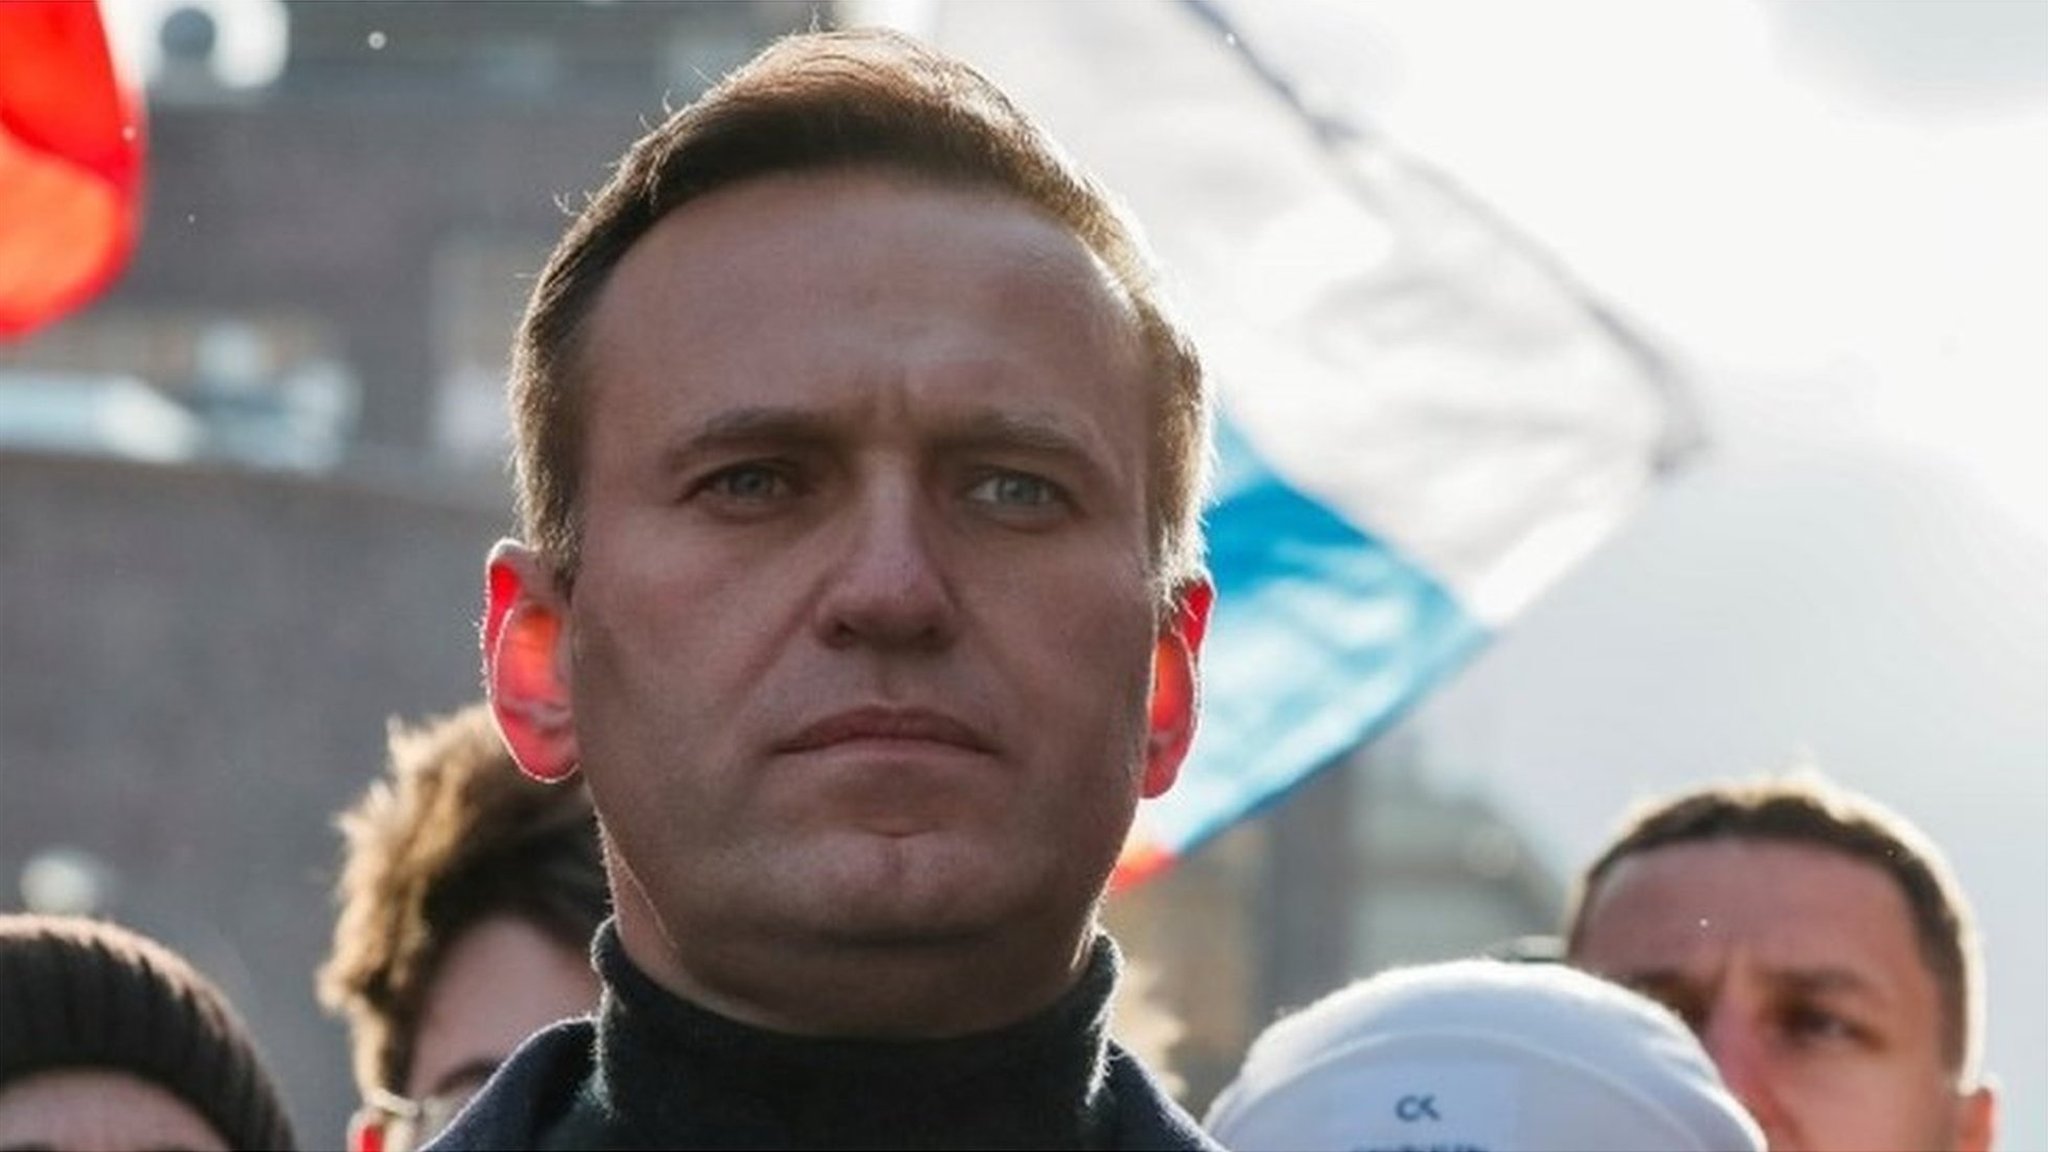 ロシア野党指導者こん睡、トランプ氏はロシアを非難せず 毒物の証拠ないと - BBCニュース